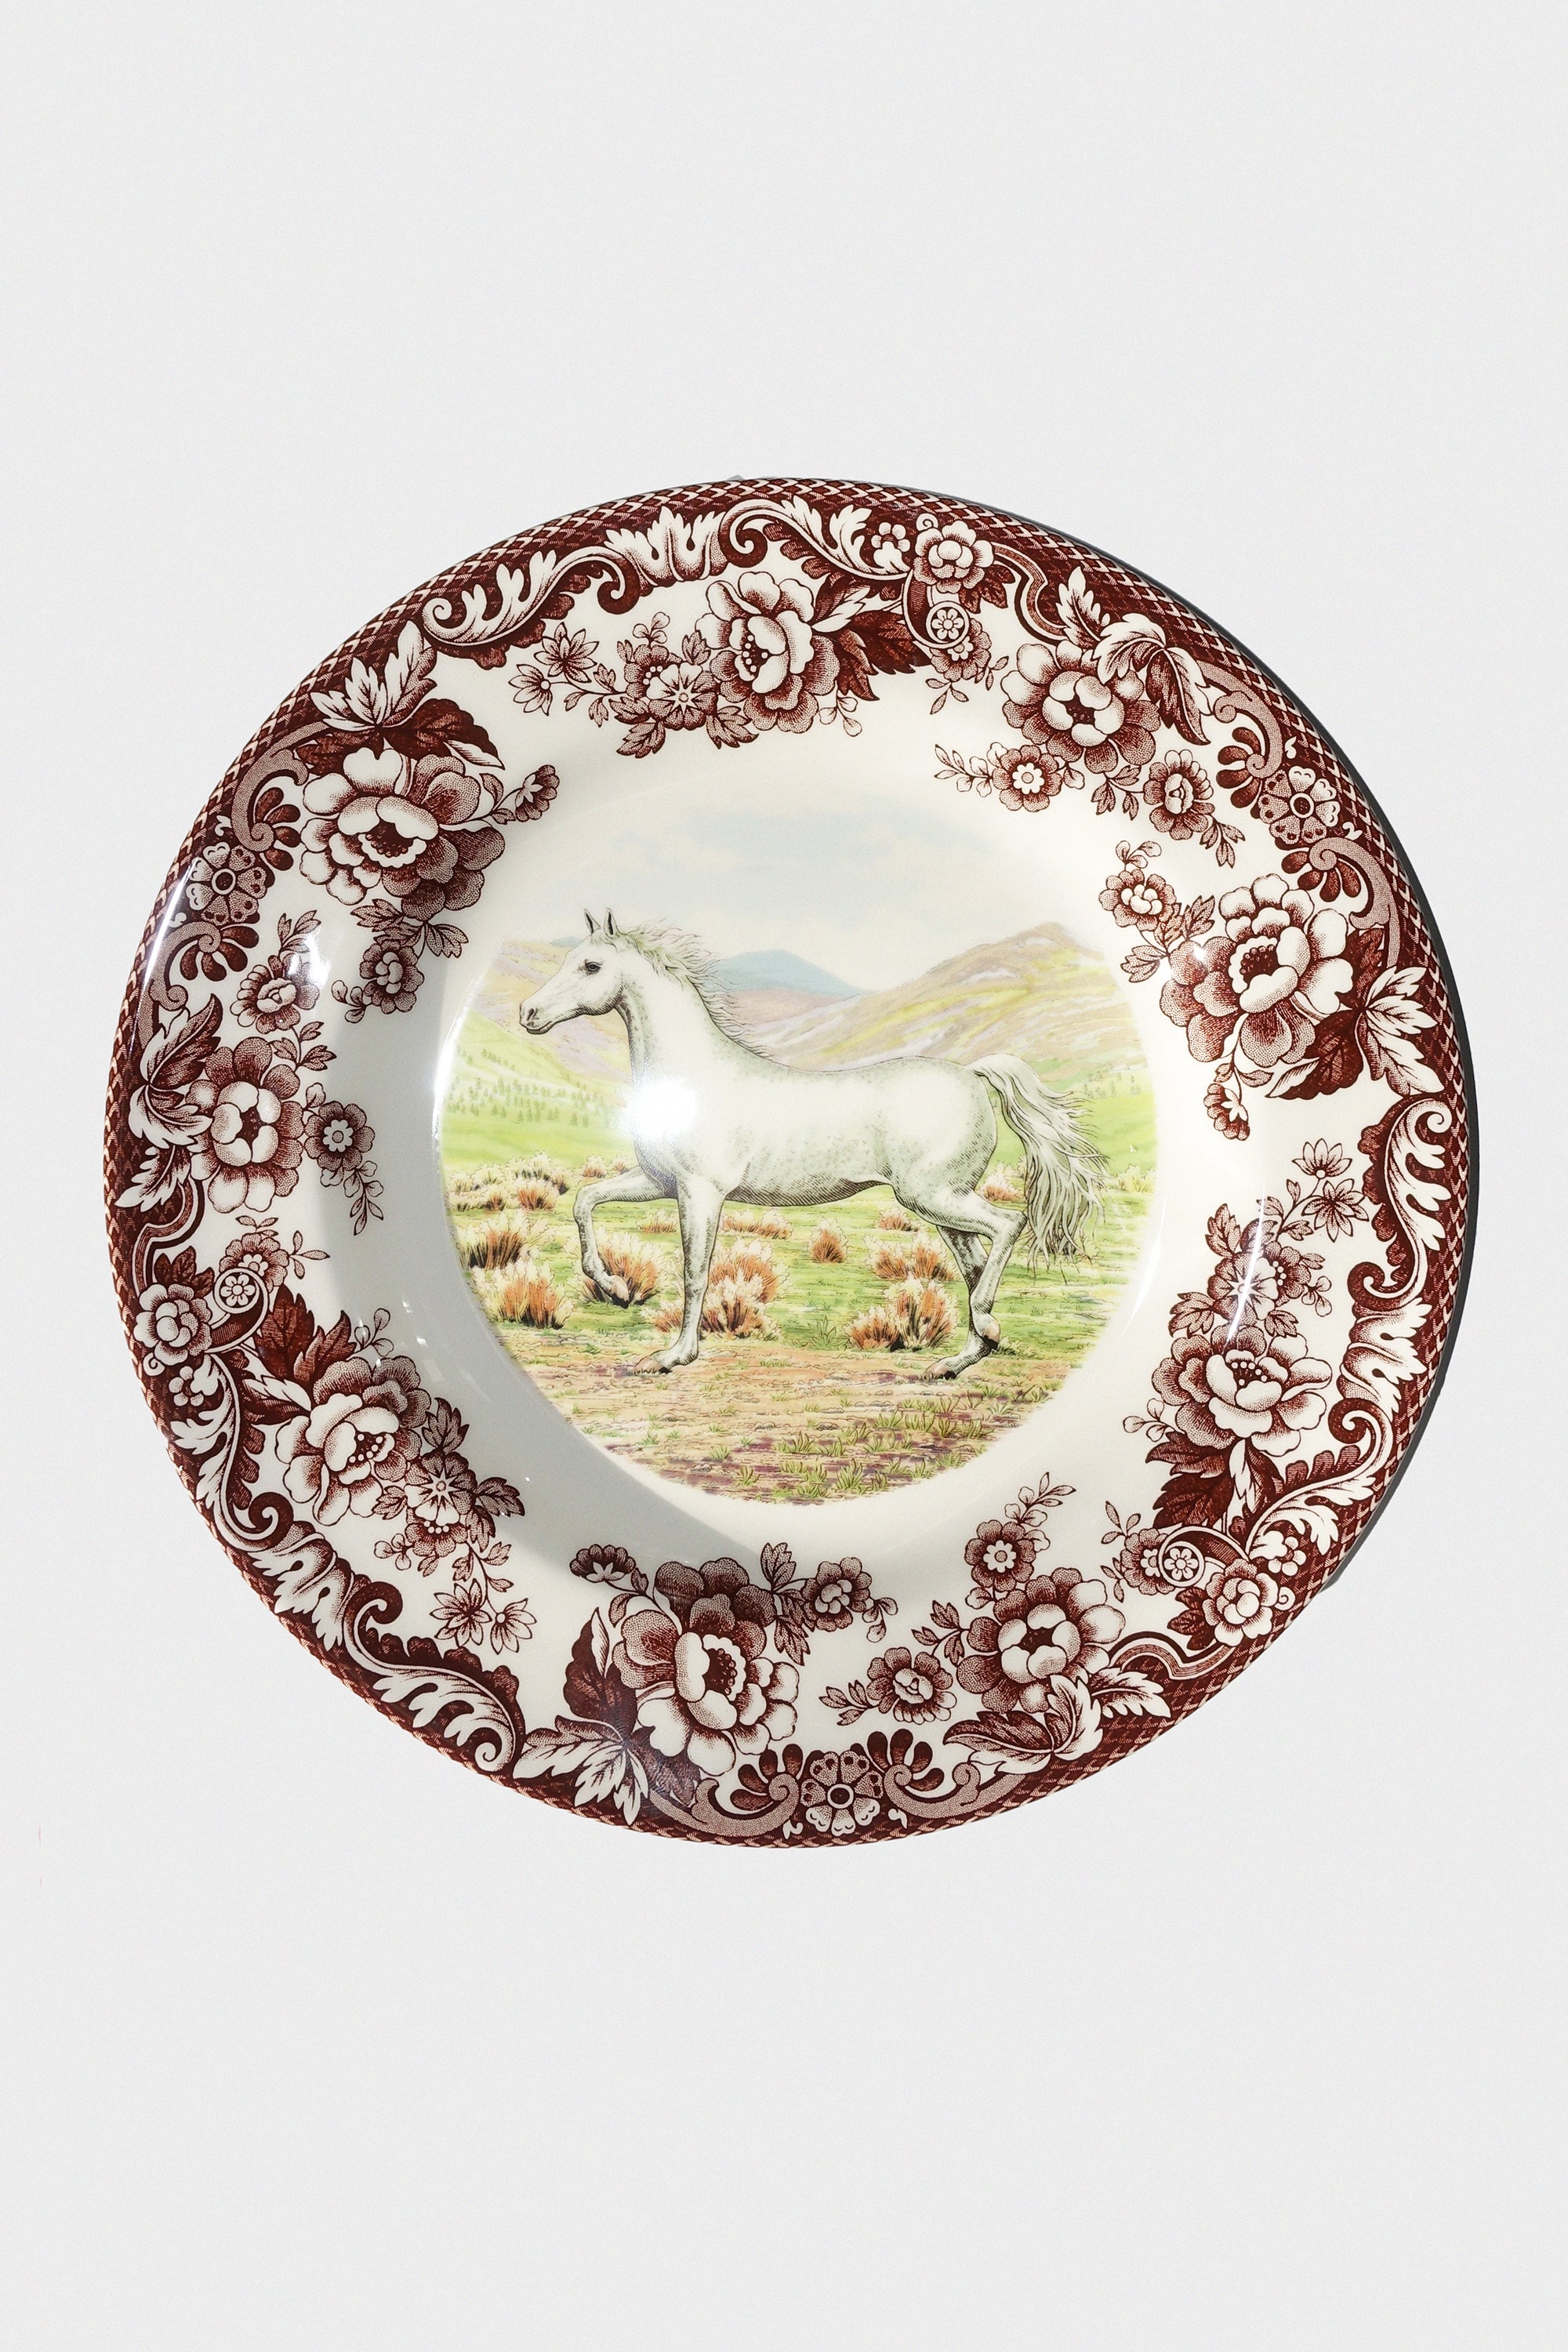 Woodland Horses 10.5" Dinner Plate in Arabian Horse